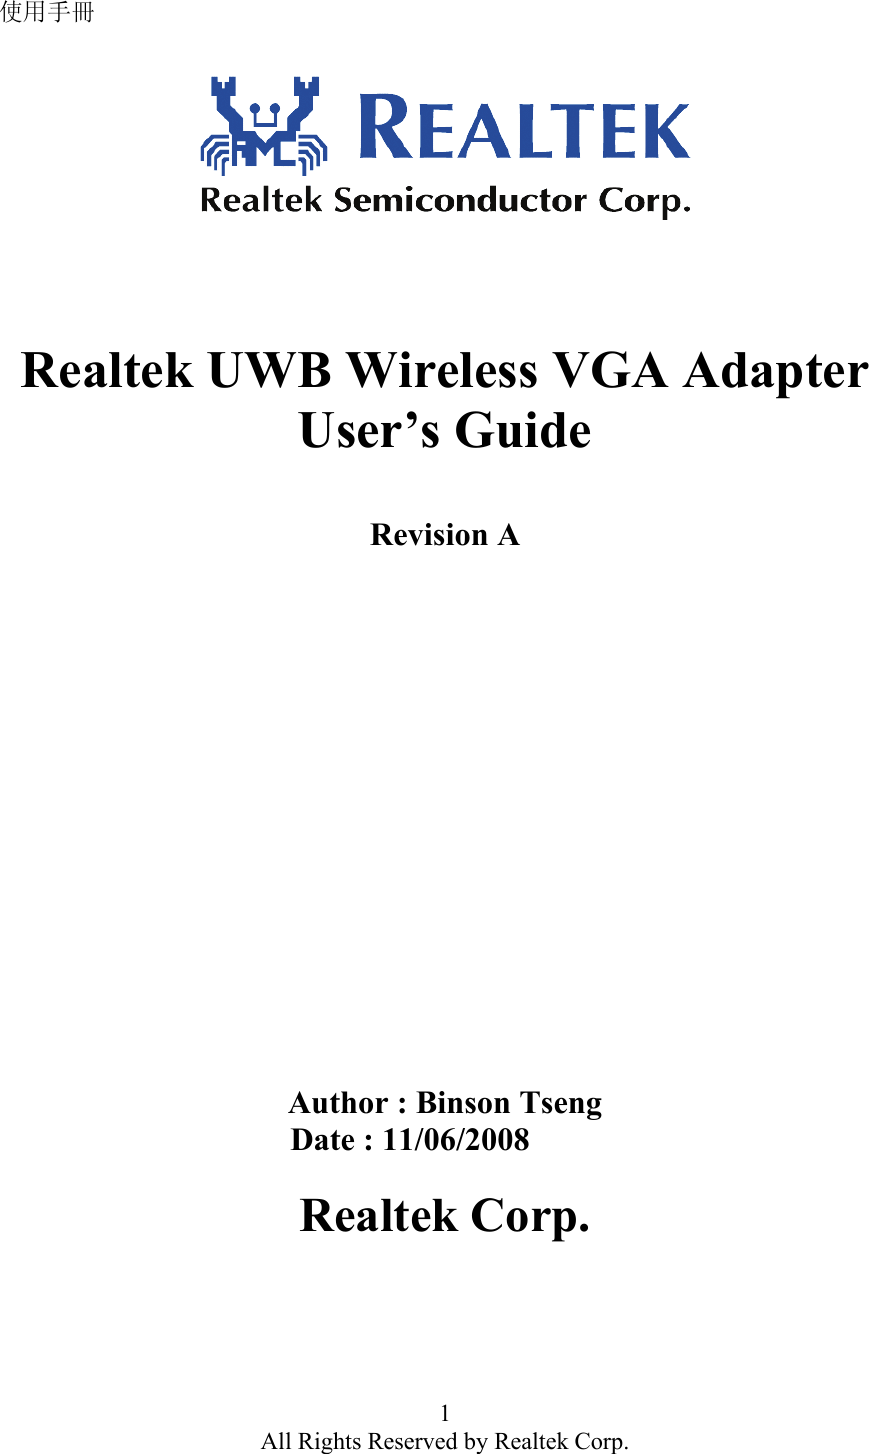 使用手冊 1 All Rights Reserved by Realtek Corp.       Realtek UWB Wireless VGA Adapter User’s Guide   Revision A                    Author : Binson Tseng                                     Date : 11/06/2008  Realtek Corp.  